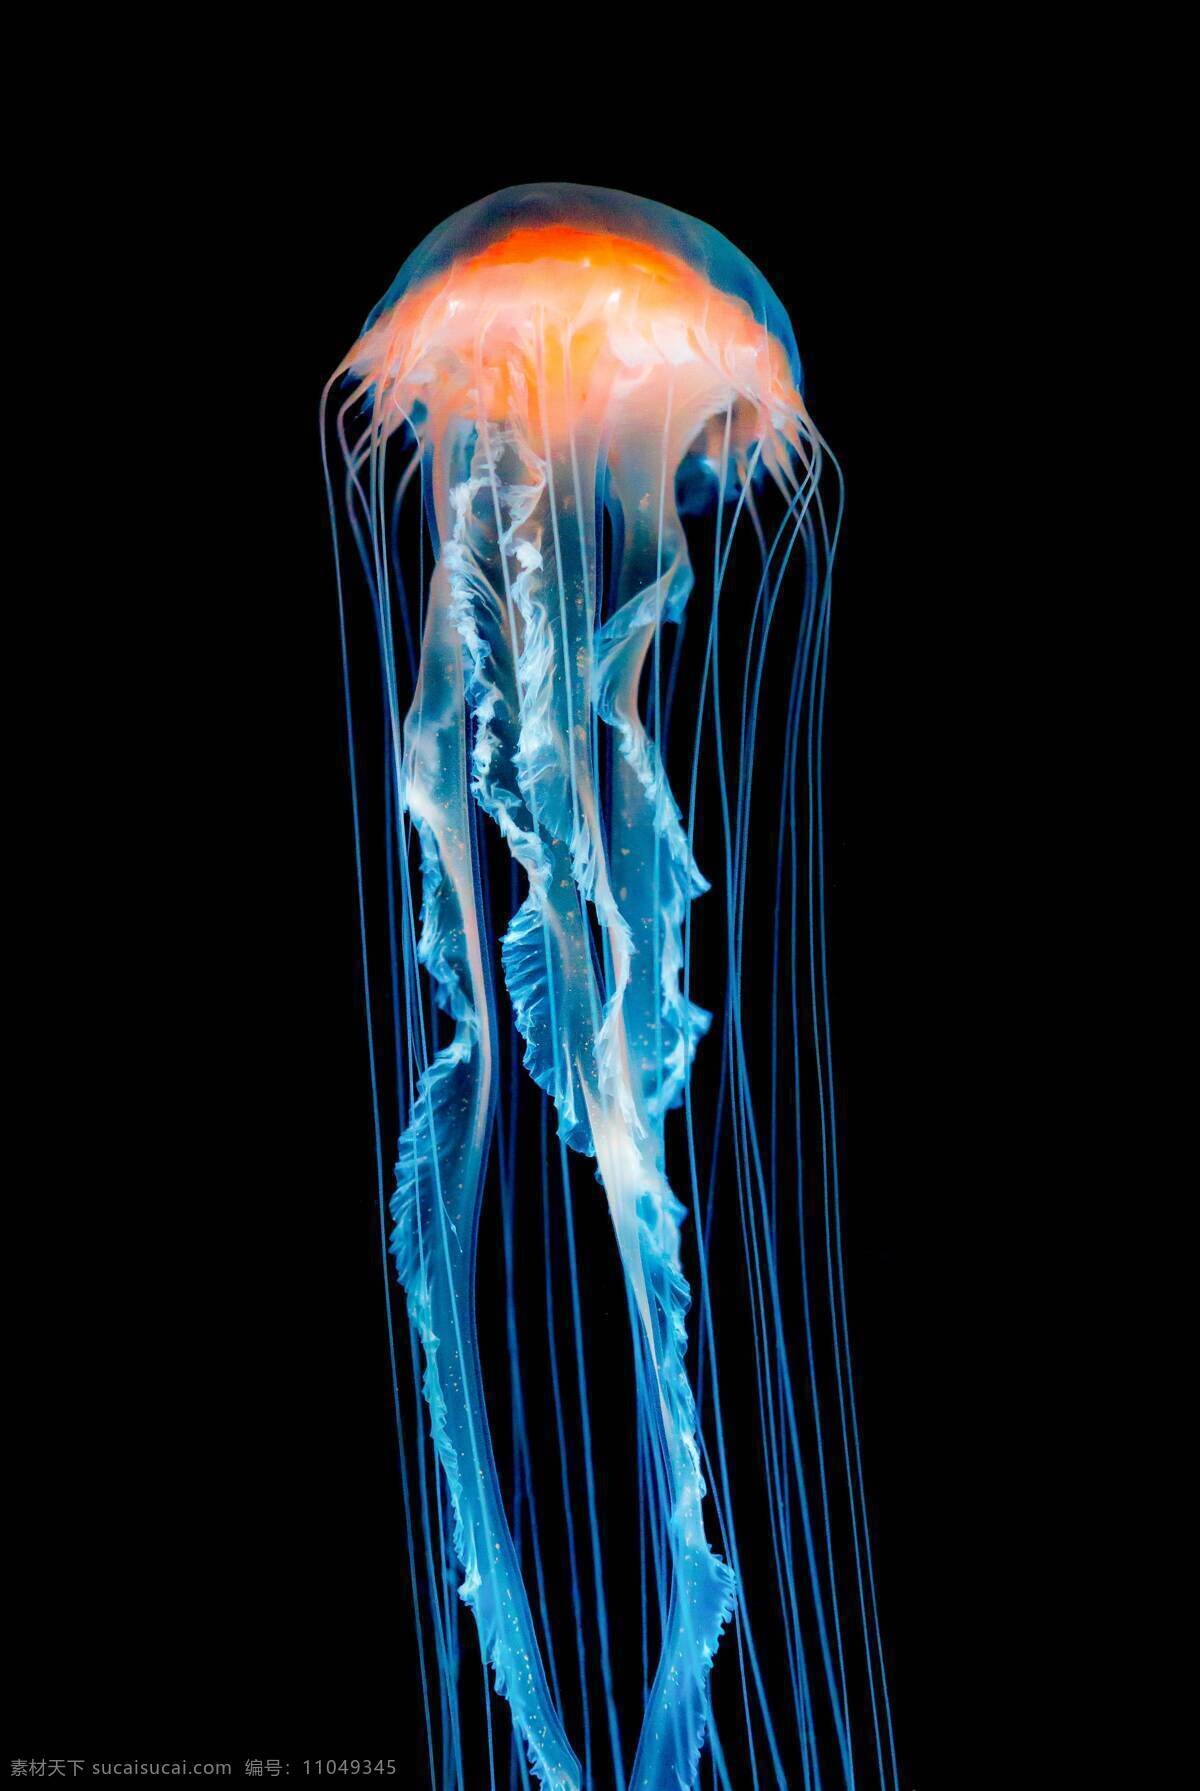 水母图片 海洋 生物 透明 美丽 水母 生物世界 海洋生物